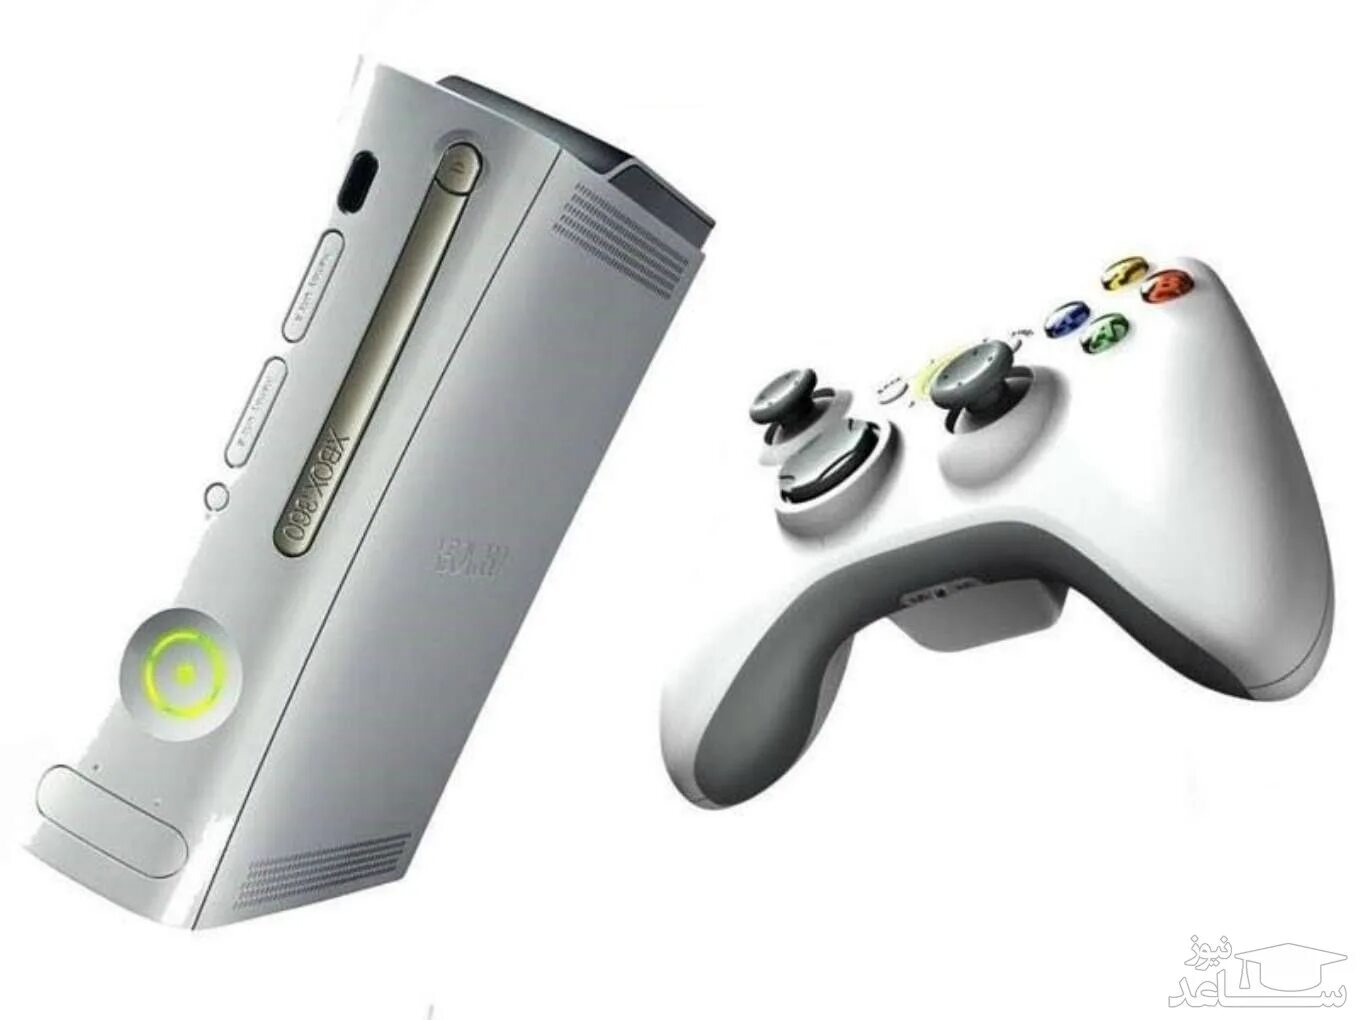 Приставки Sony Xbox 360. 1 Приставка иксбокс 360. Консоль игровая приставка Xbox 360. Приставка иксбокс 360 2005 года. Приставка хбокс 360